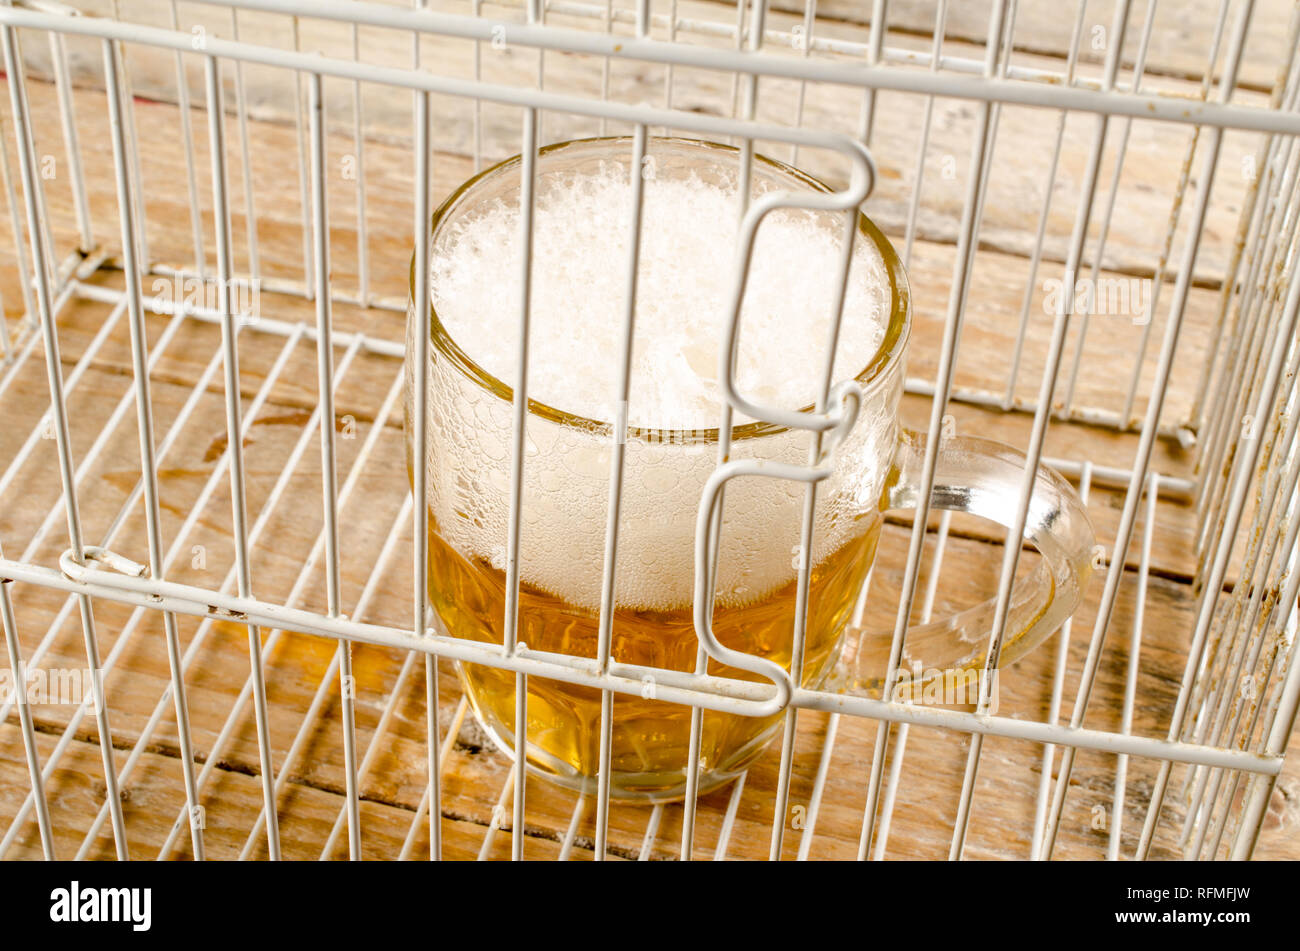 Glas Bier in einem Käfig, ein Konzept, das auf der Alkoholsucht und  Missbrauch Stockfotografie - Alamy